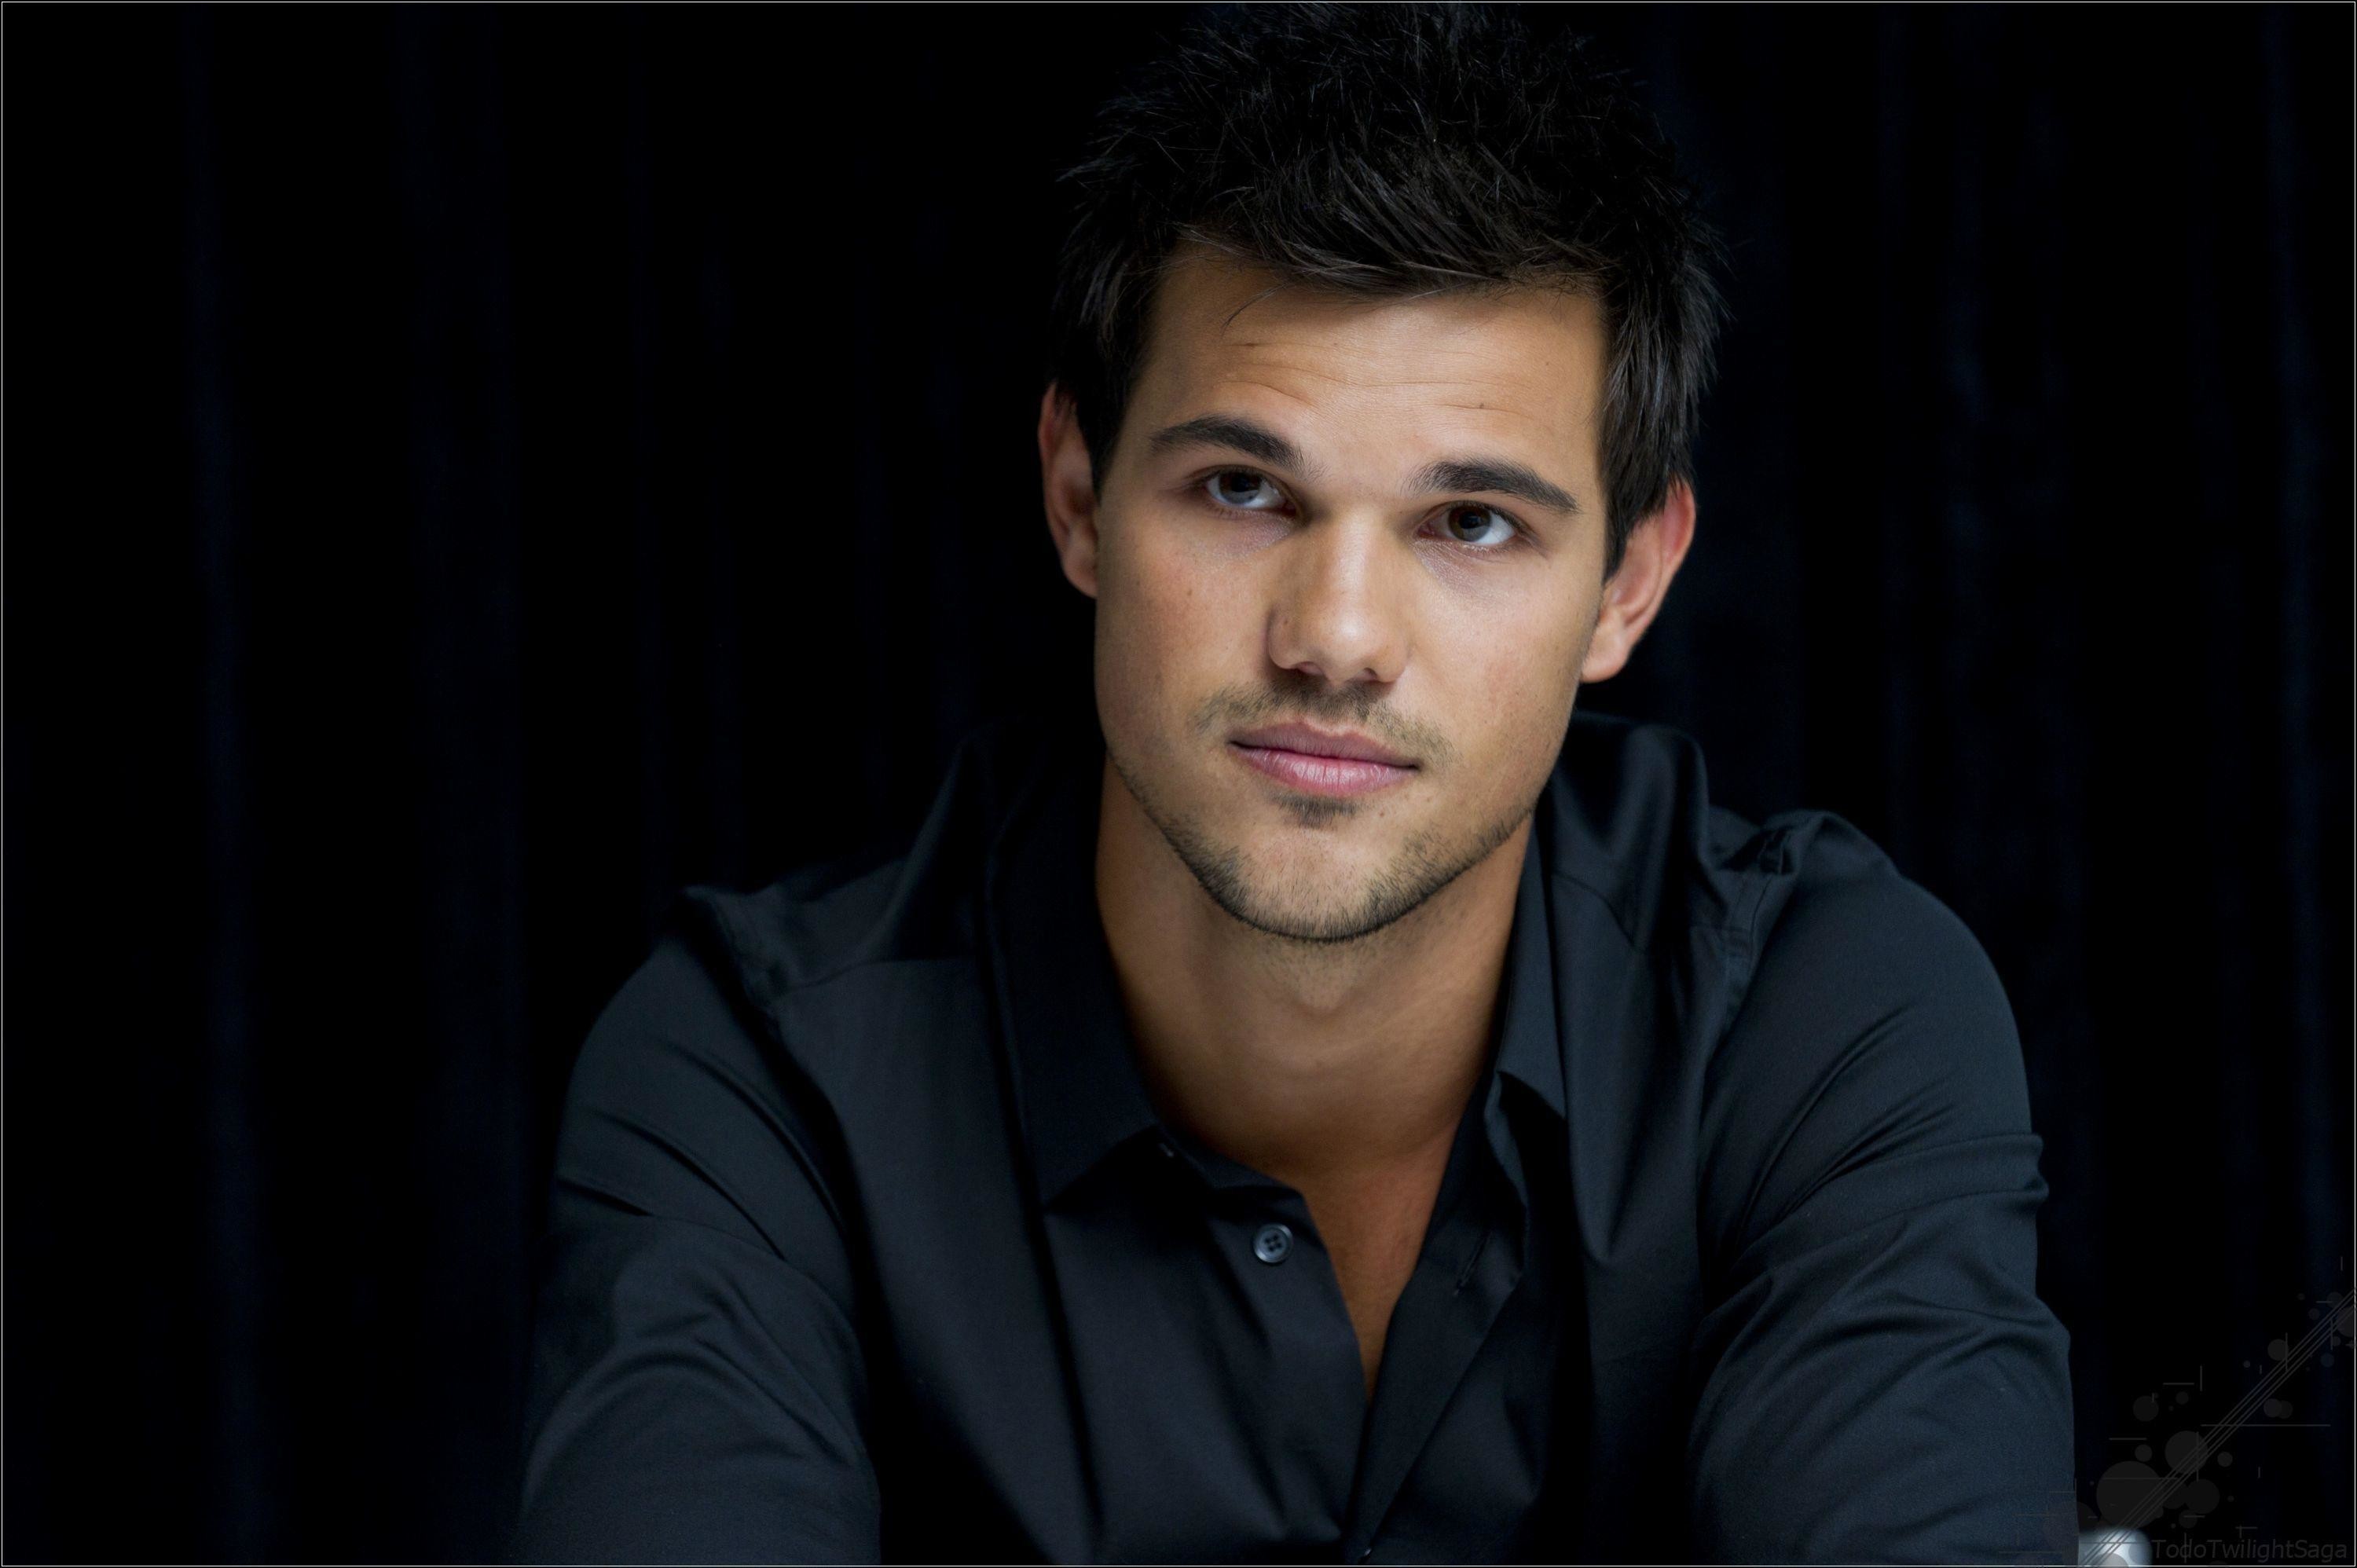 Taylor Lautner Shirtless Wallpaper Image